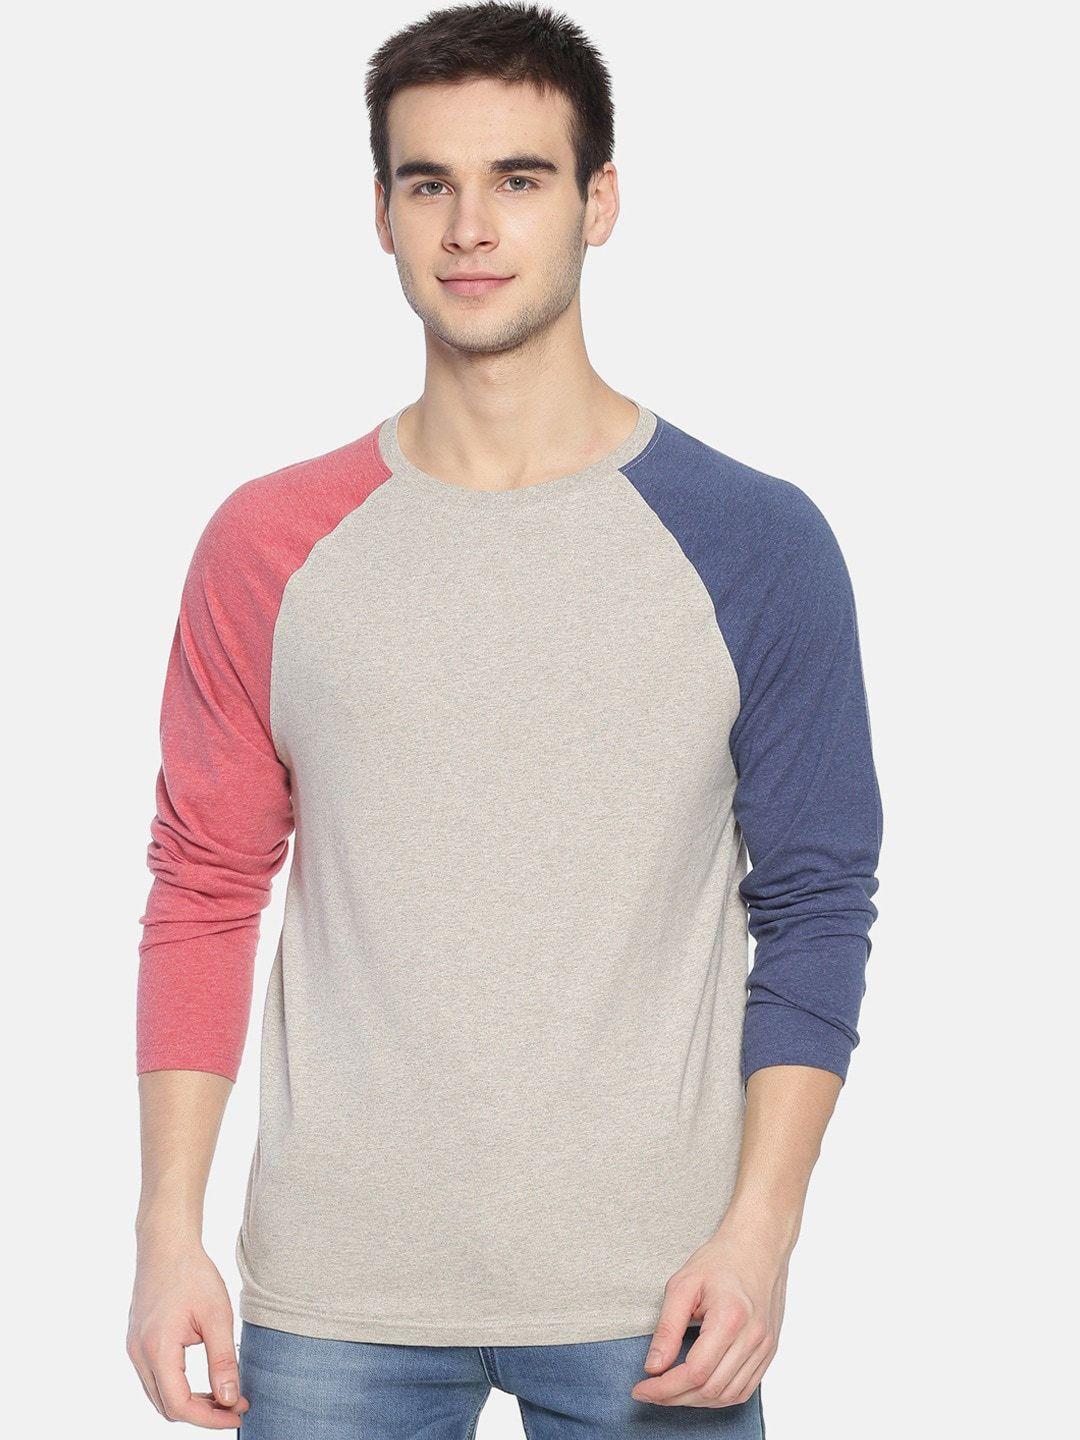 steenbok round neck colourblocked regular fit pure cotton t-shirt